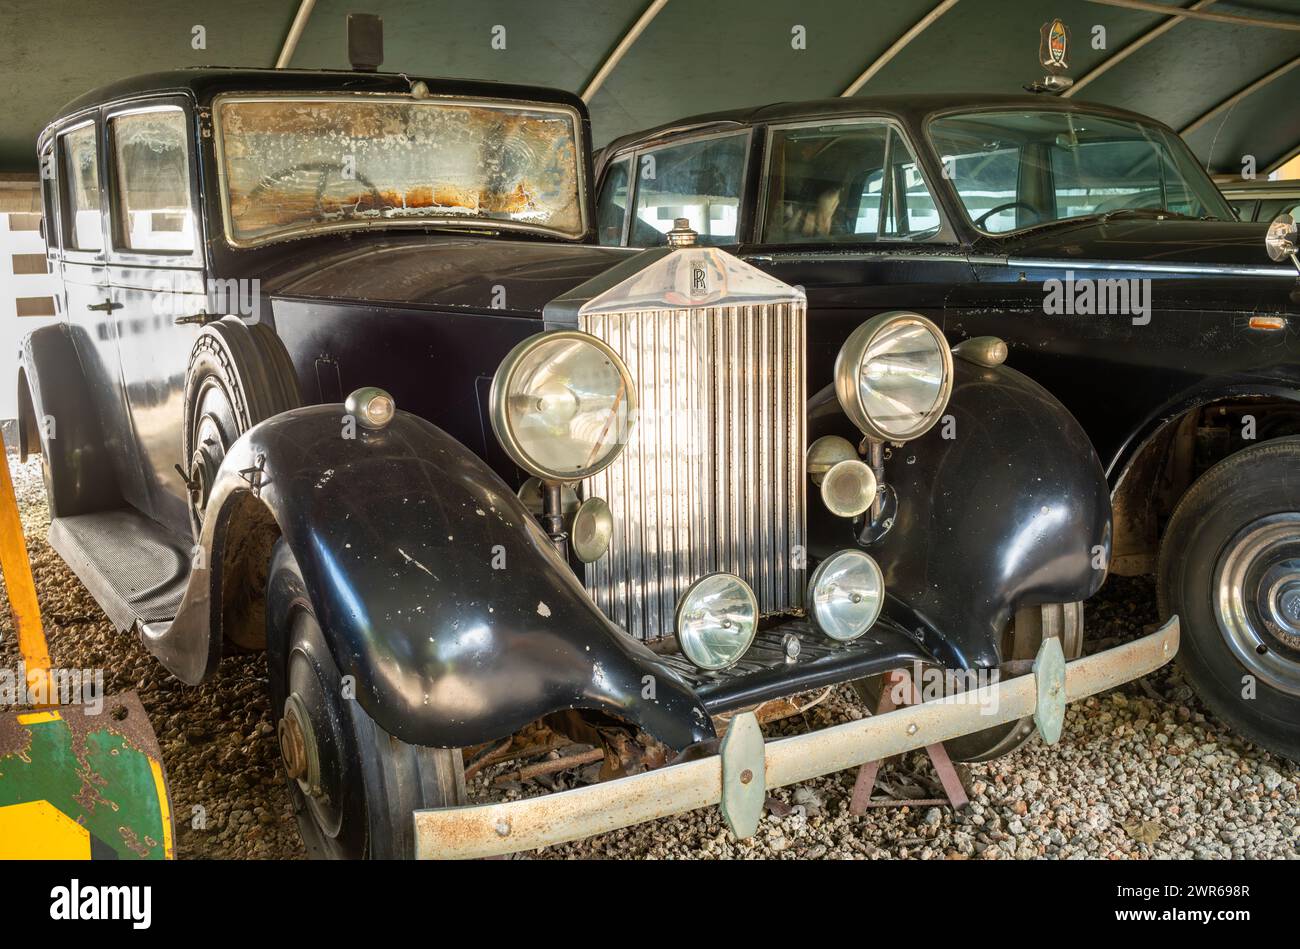 1938 Rolls-Royce Phantom III utilisé par des fonctionnaires coloniaux et gouvernementaux, Musée national, Dar es Salaam, Tanzanie. Banque D'Images